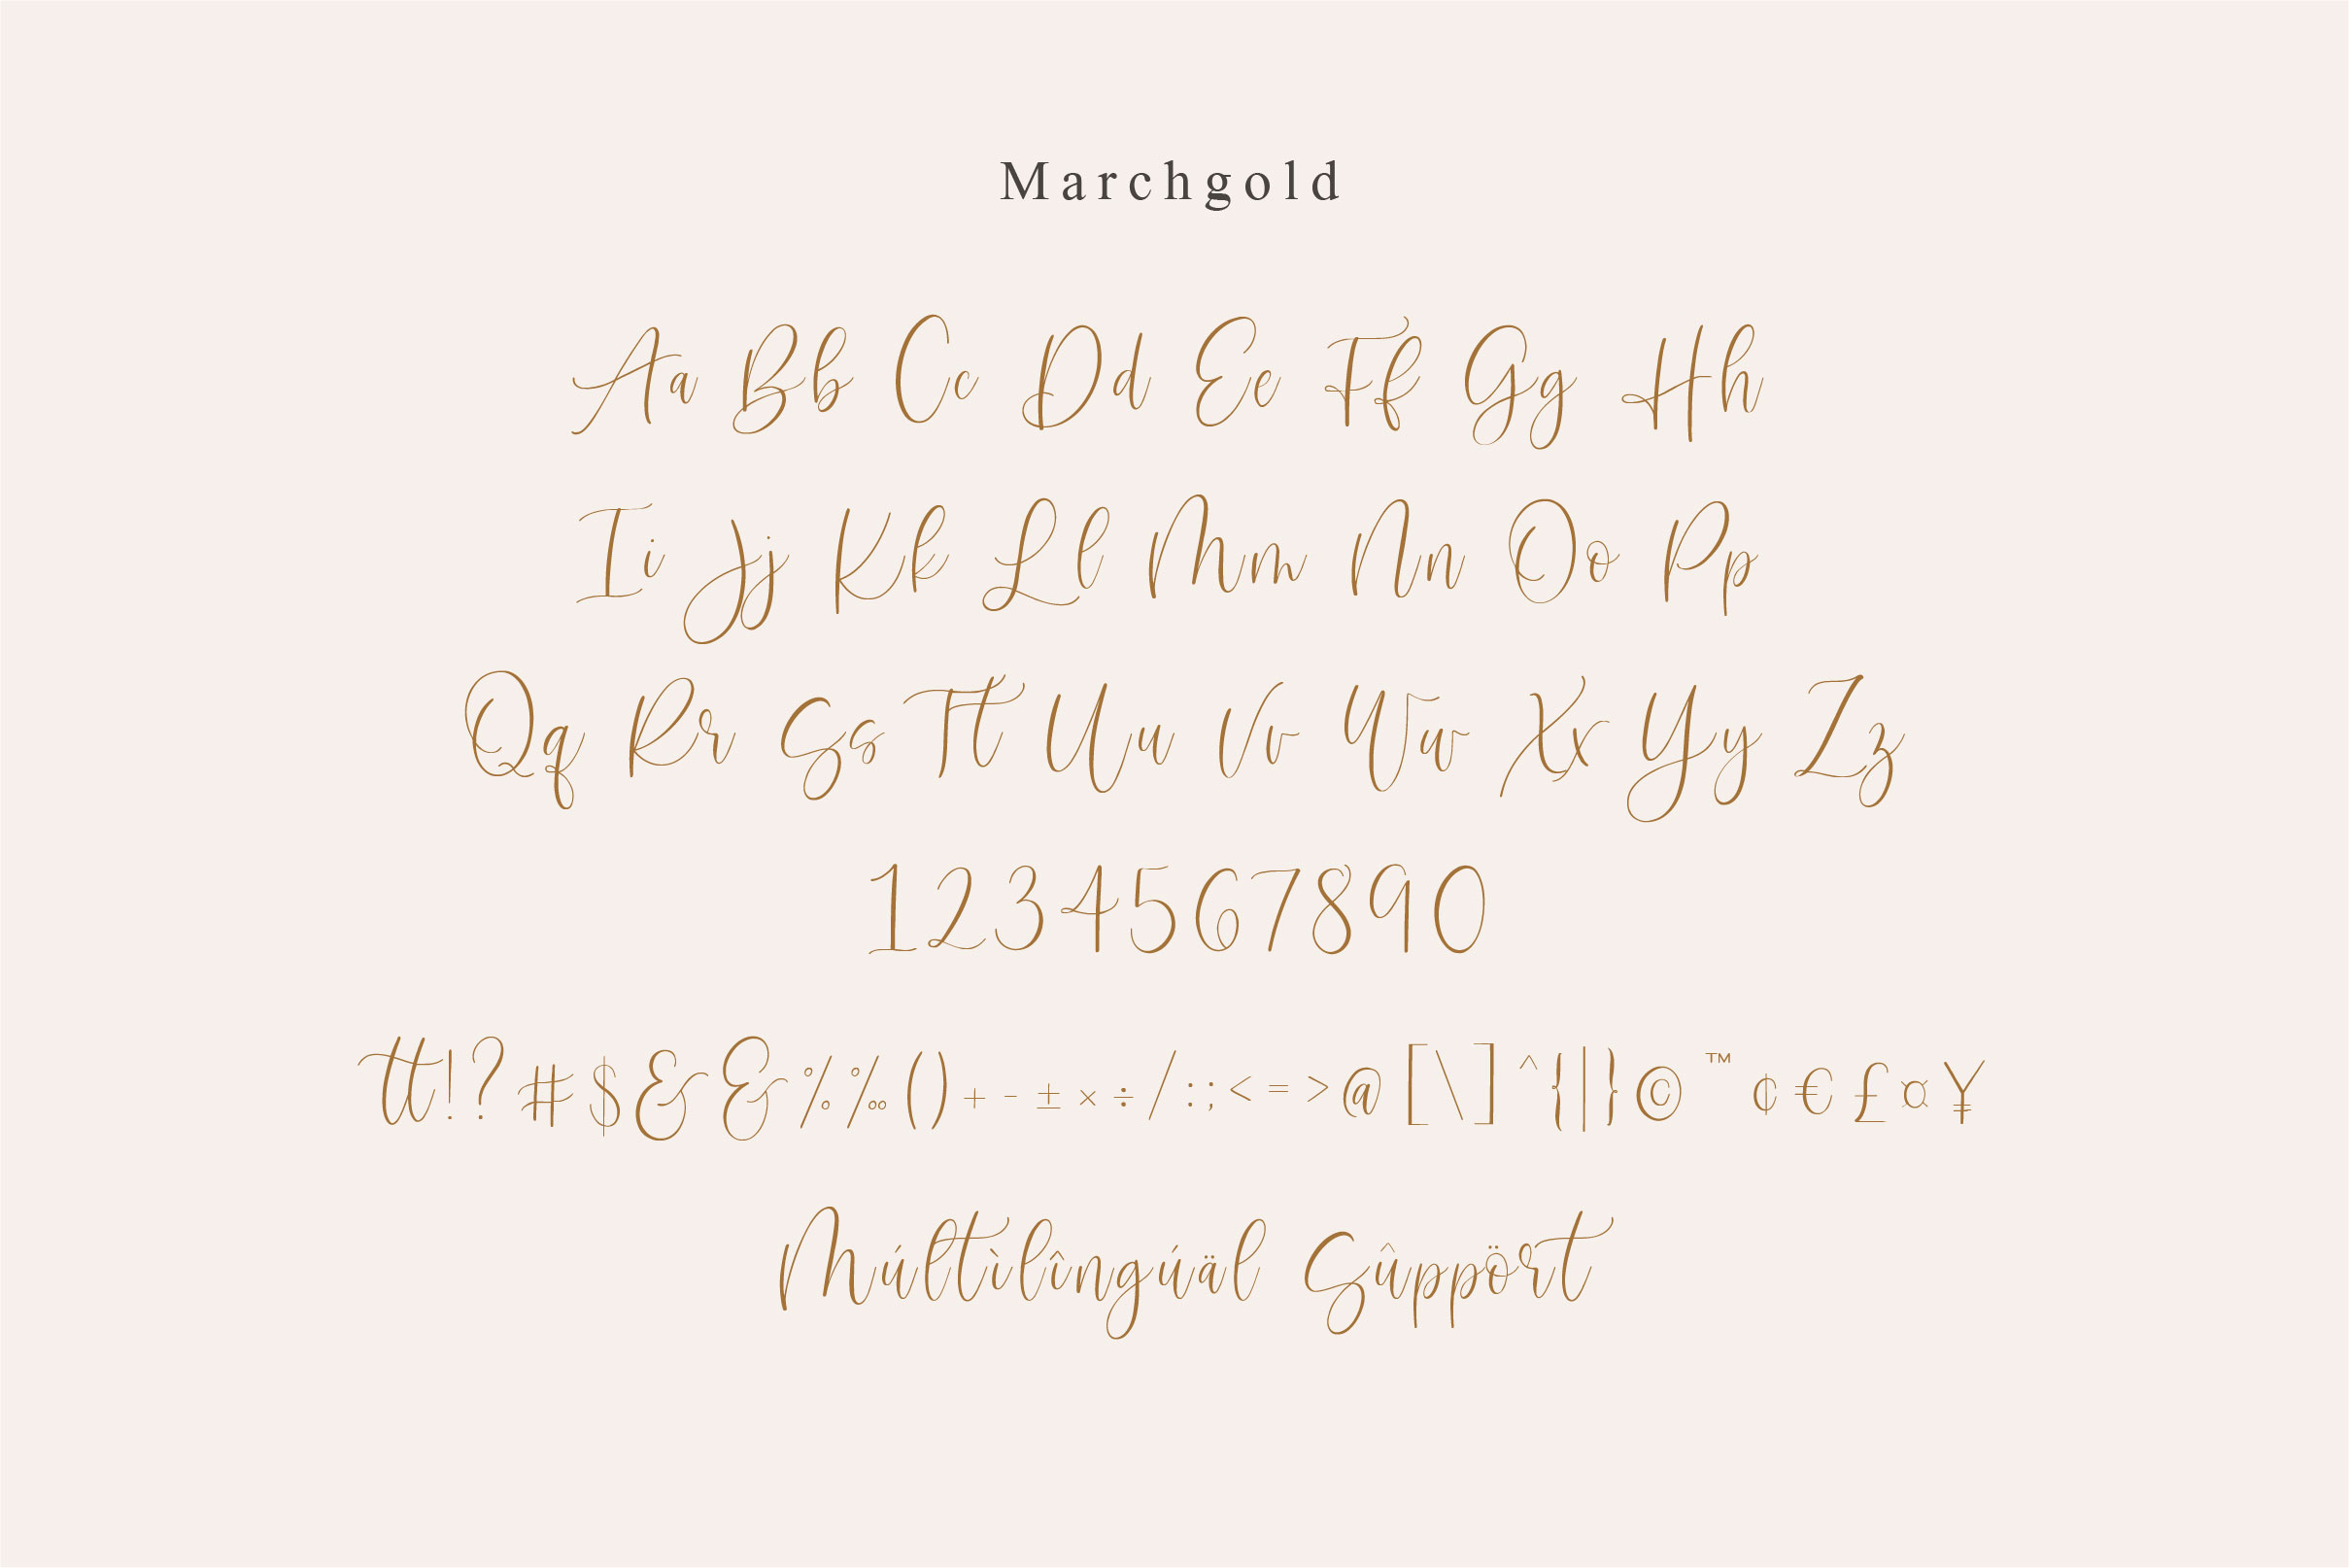 Marchgold